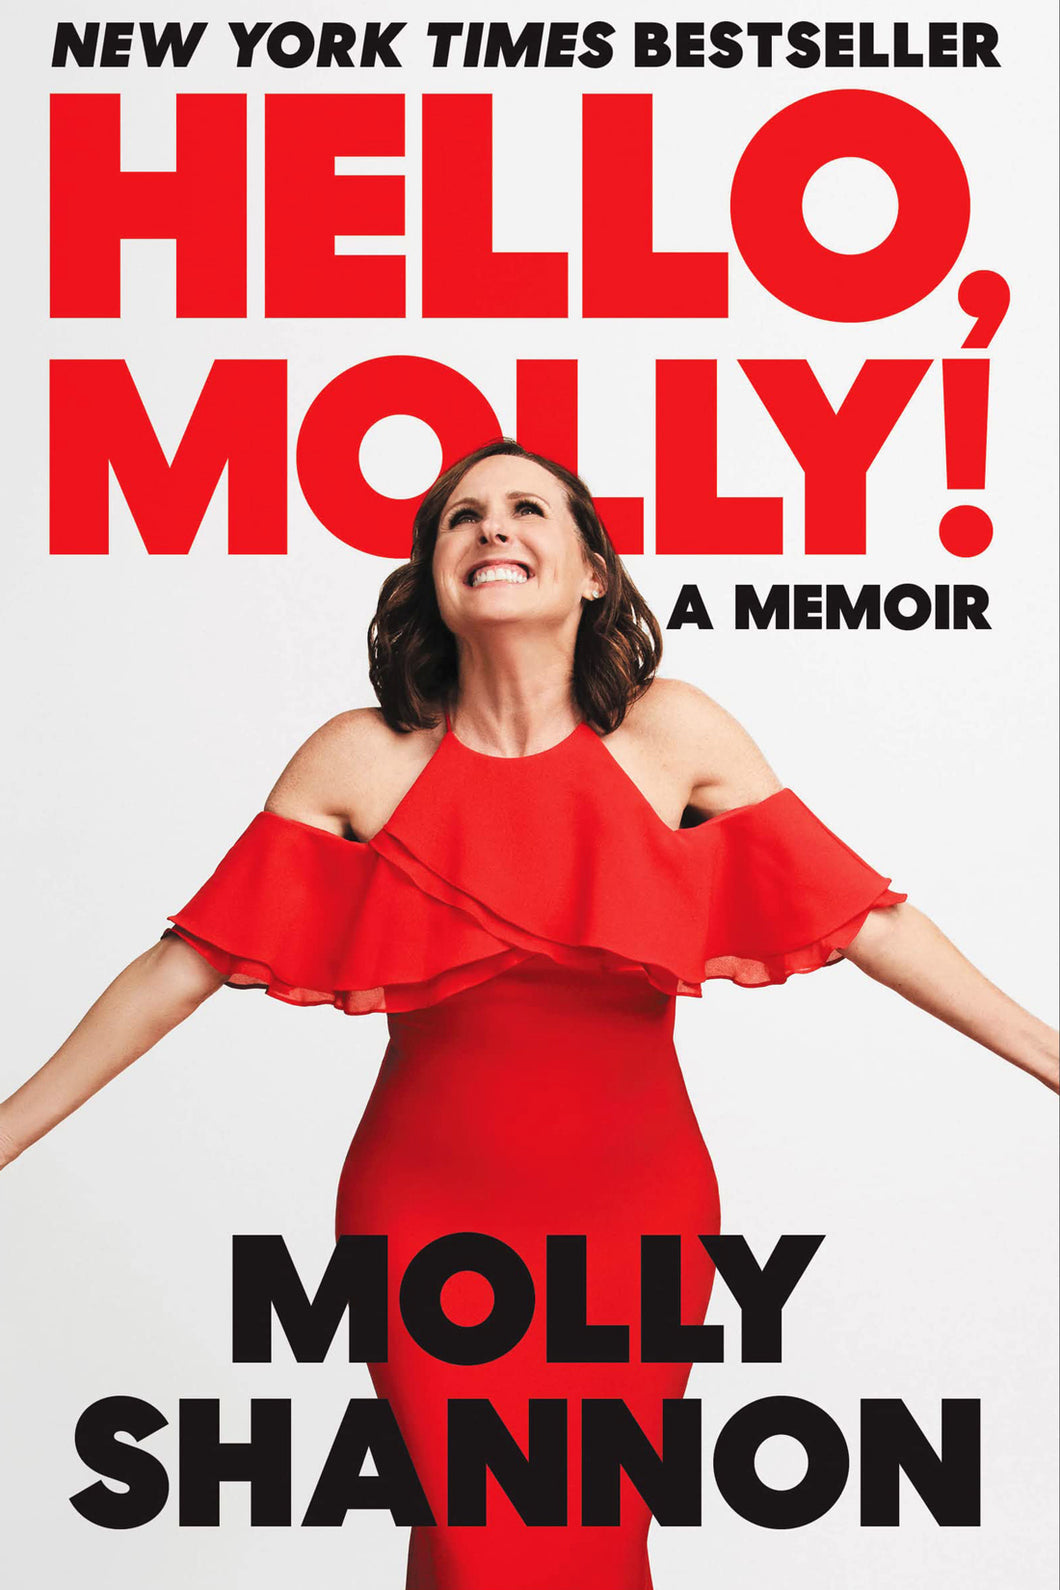 Hello, Molly!: A Memoir by Molly Shannon & Sean Wilsey / Hardcover - NEW BOOK OR BOOK BOX